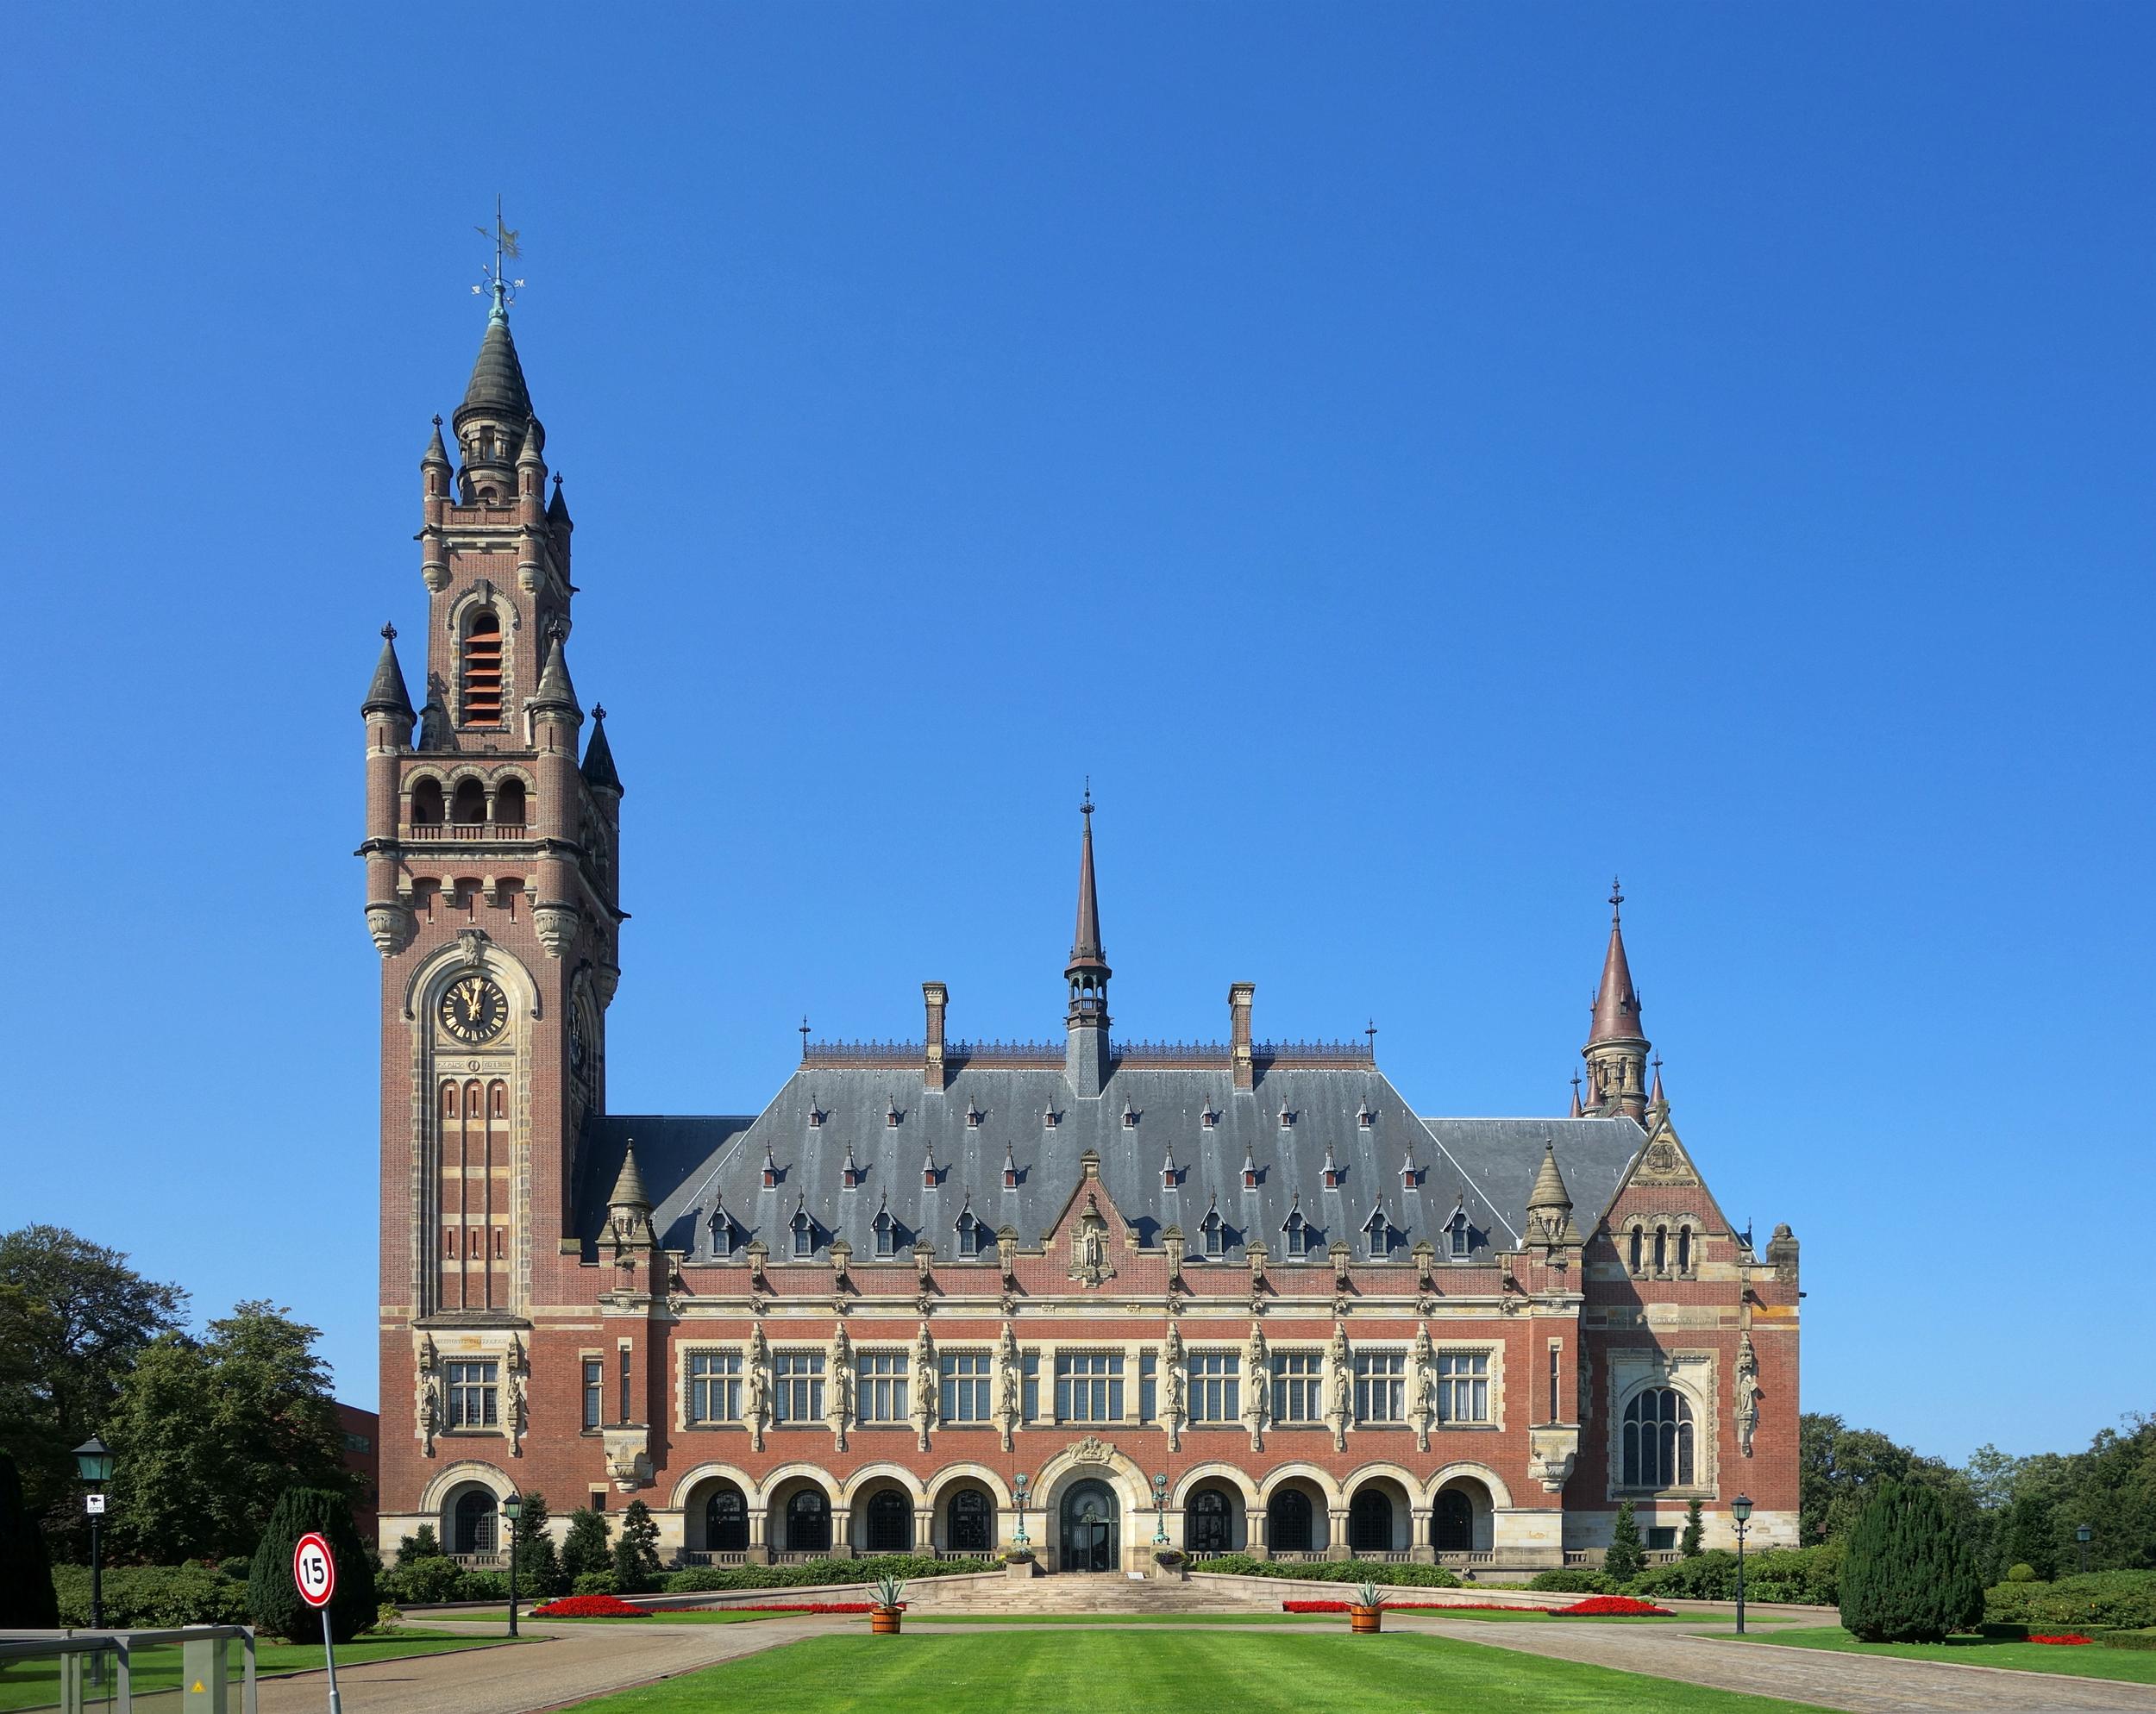 Χάγη - Παλάτι της Ειρήνης (Διεθνές δικαστήριο της Χάγης)928